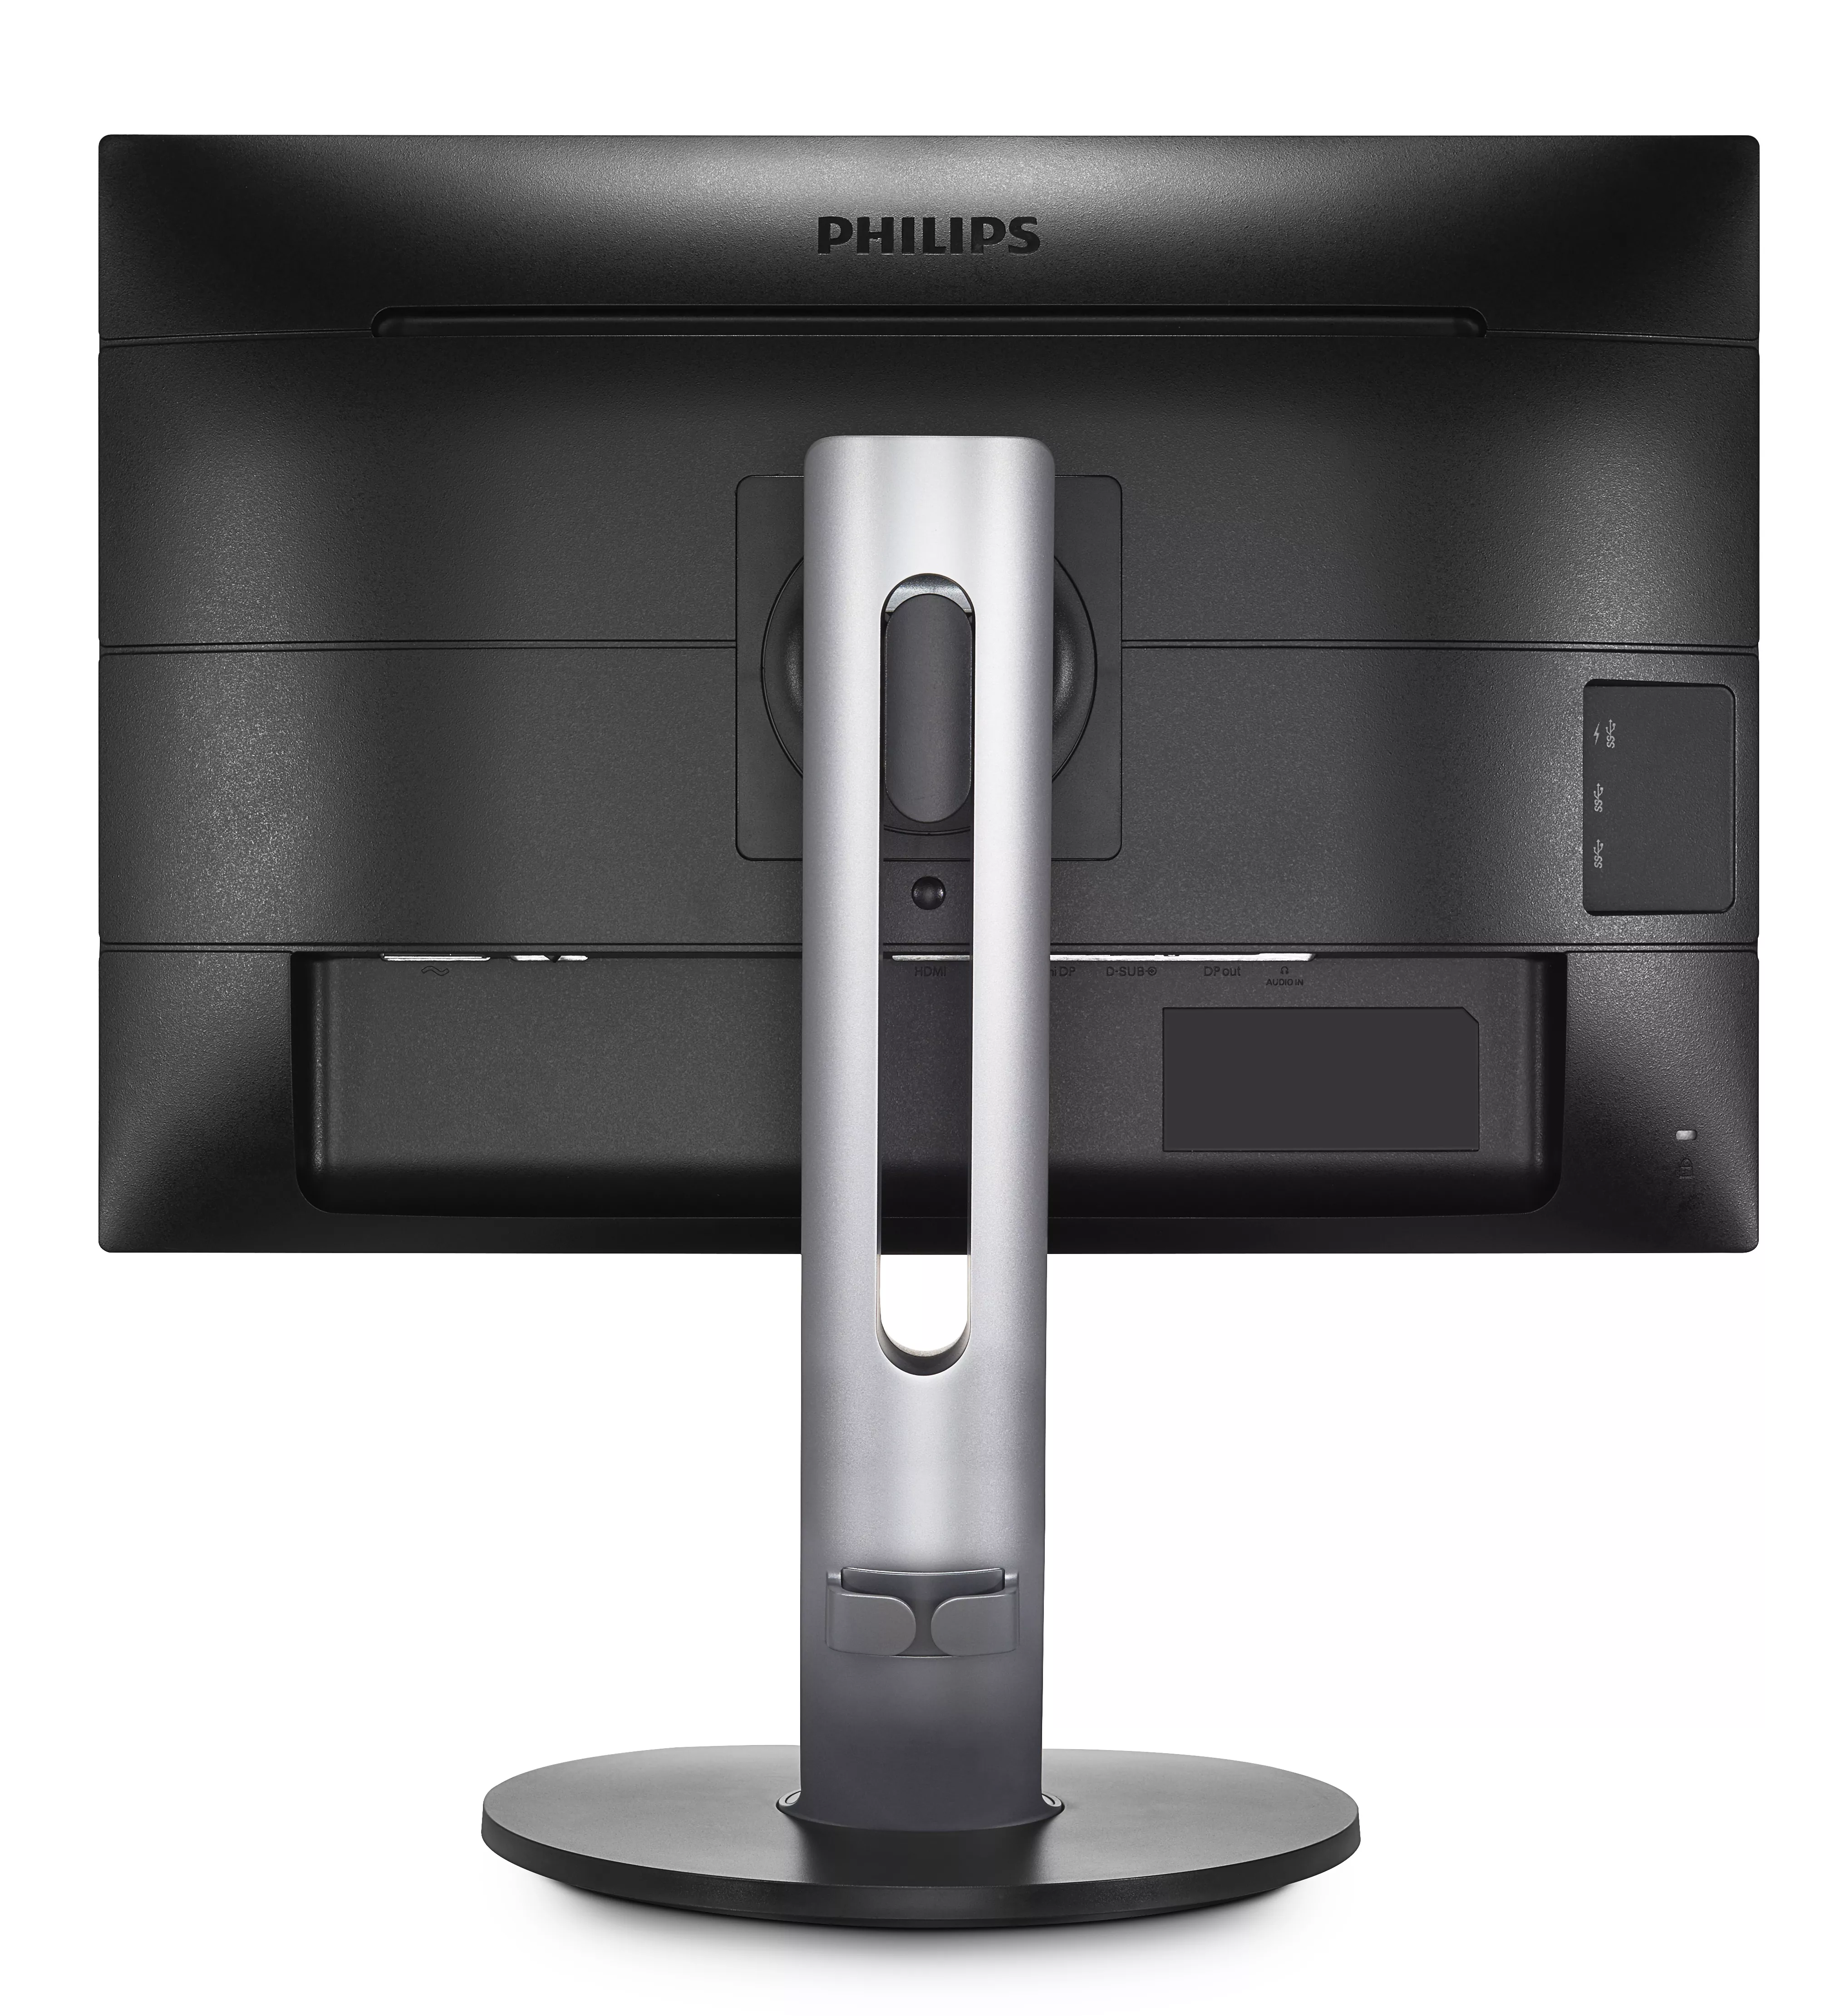 Vente Philips B Line Moniteur LCD avec PowerSensor Philips au meilleur prix - visuel 6